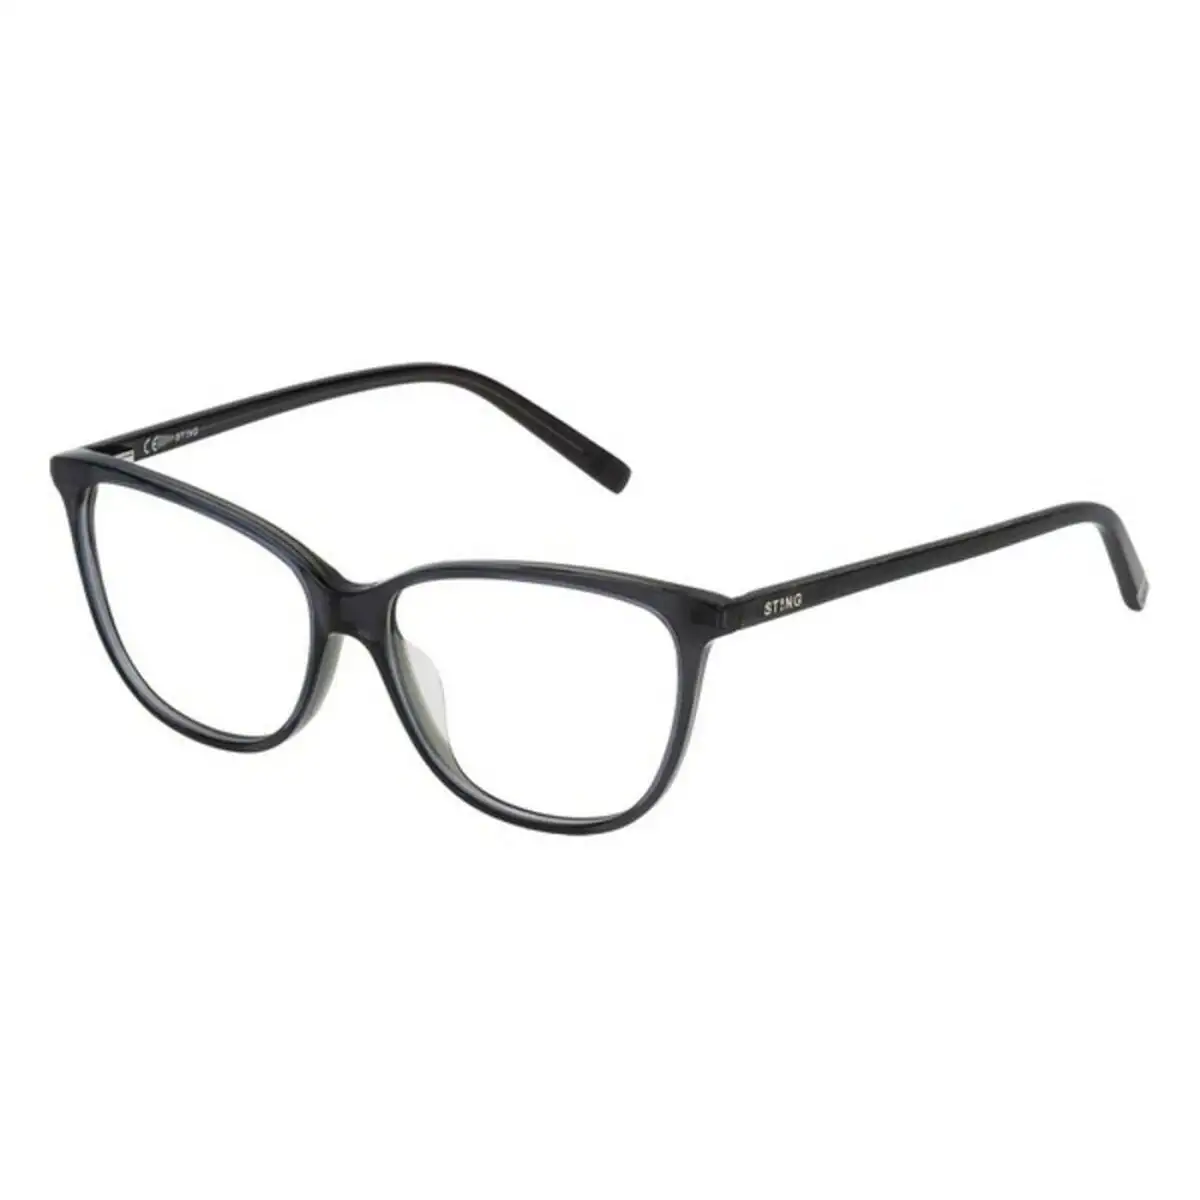 Monture de lunettes homme sting vst022530amt vert gris o 53 mm _7055. Découvrez DIAYTAR SENEGAL - Là où Votre Shopping Prend Vie. Plongez dans notre vaste sélection et trouvez des produits qui ajoutent une touche spéciale à votre quotidien.